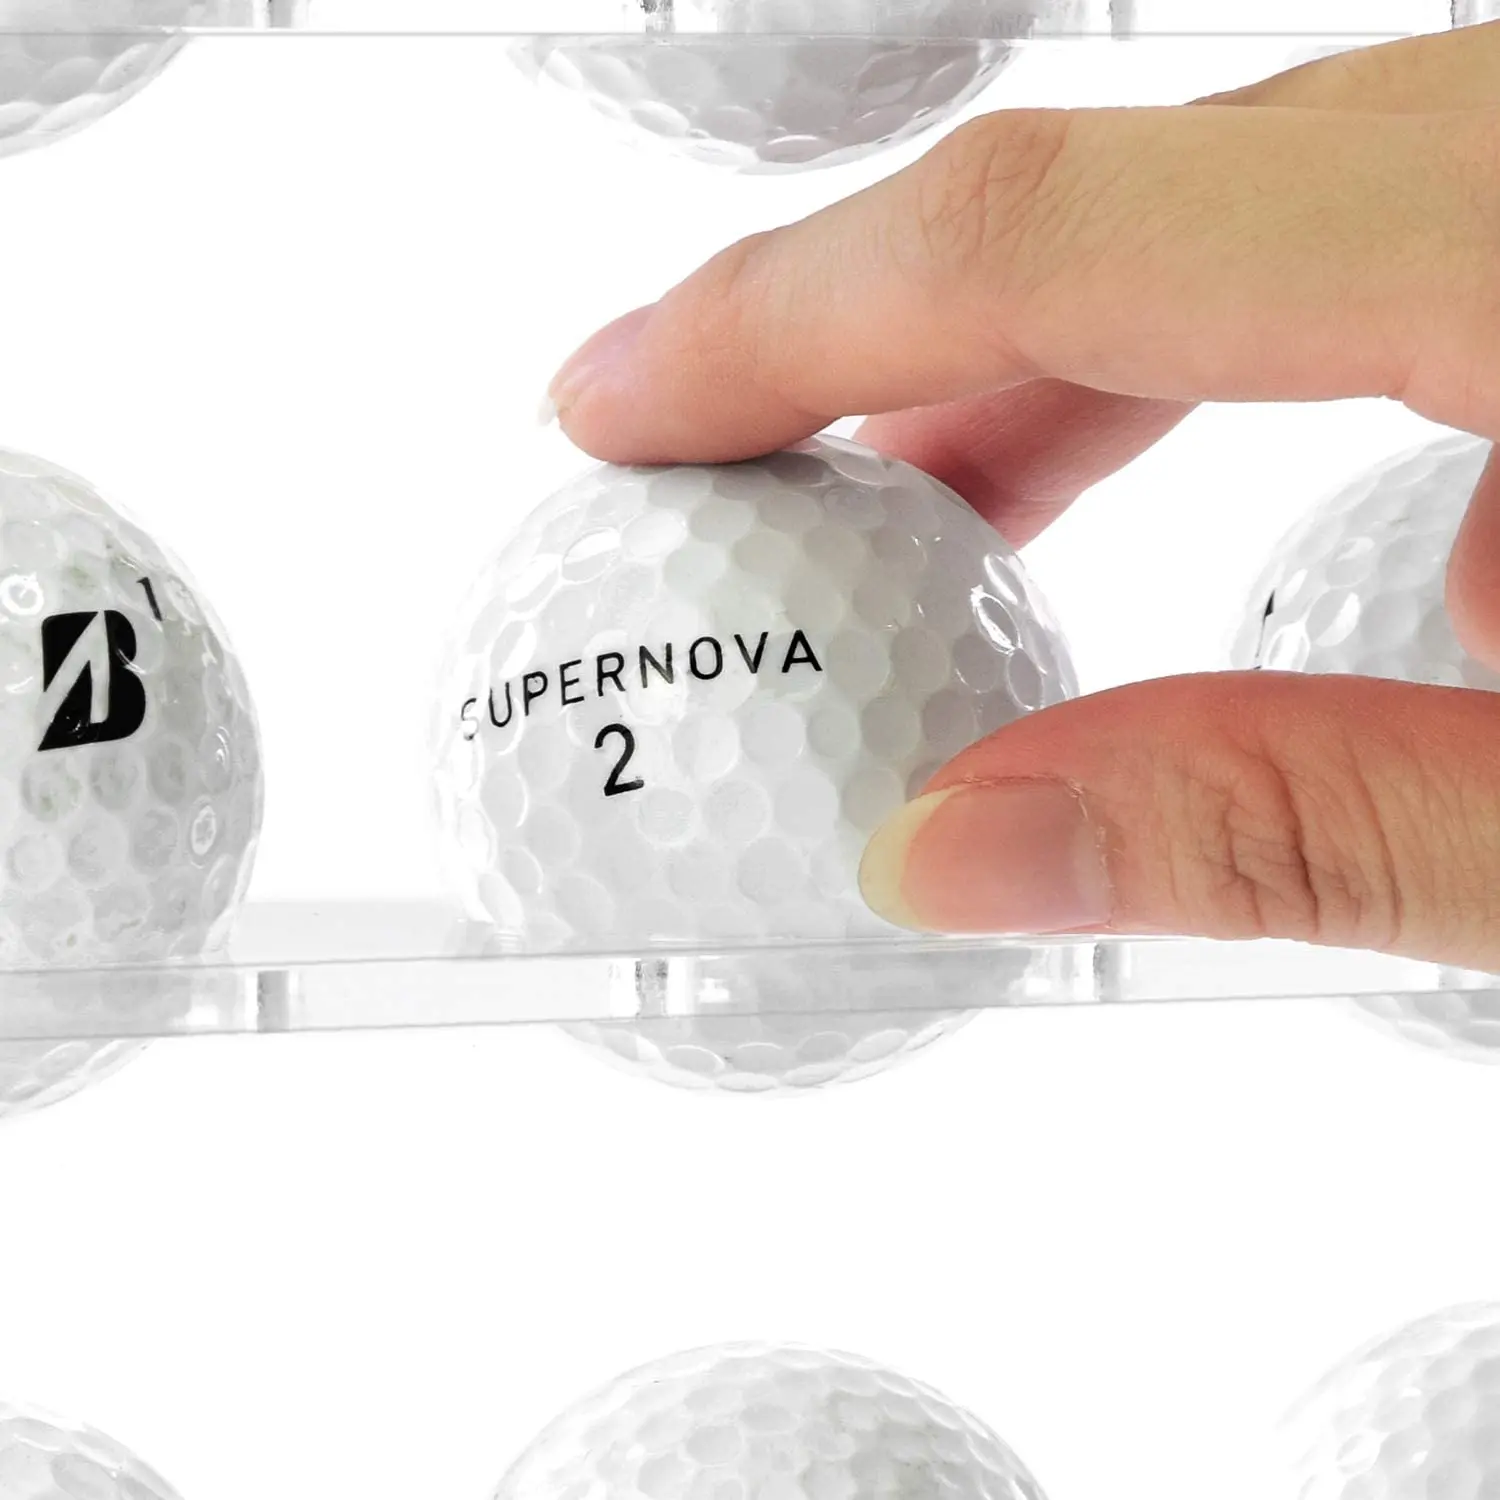 Golf Ball Display Case for 20 Ball Golf Ball Holder Golf 